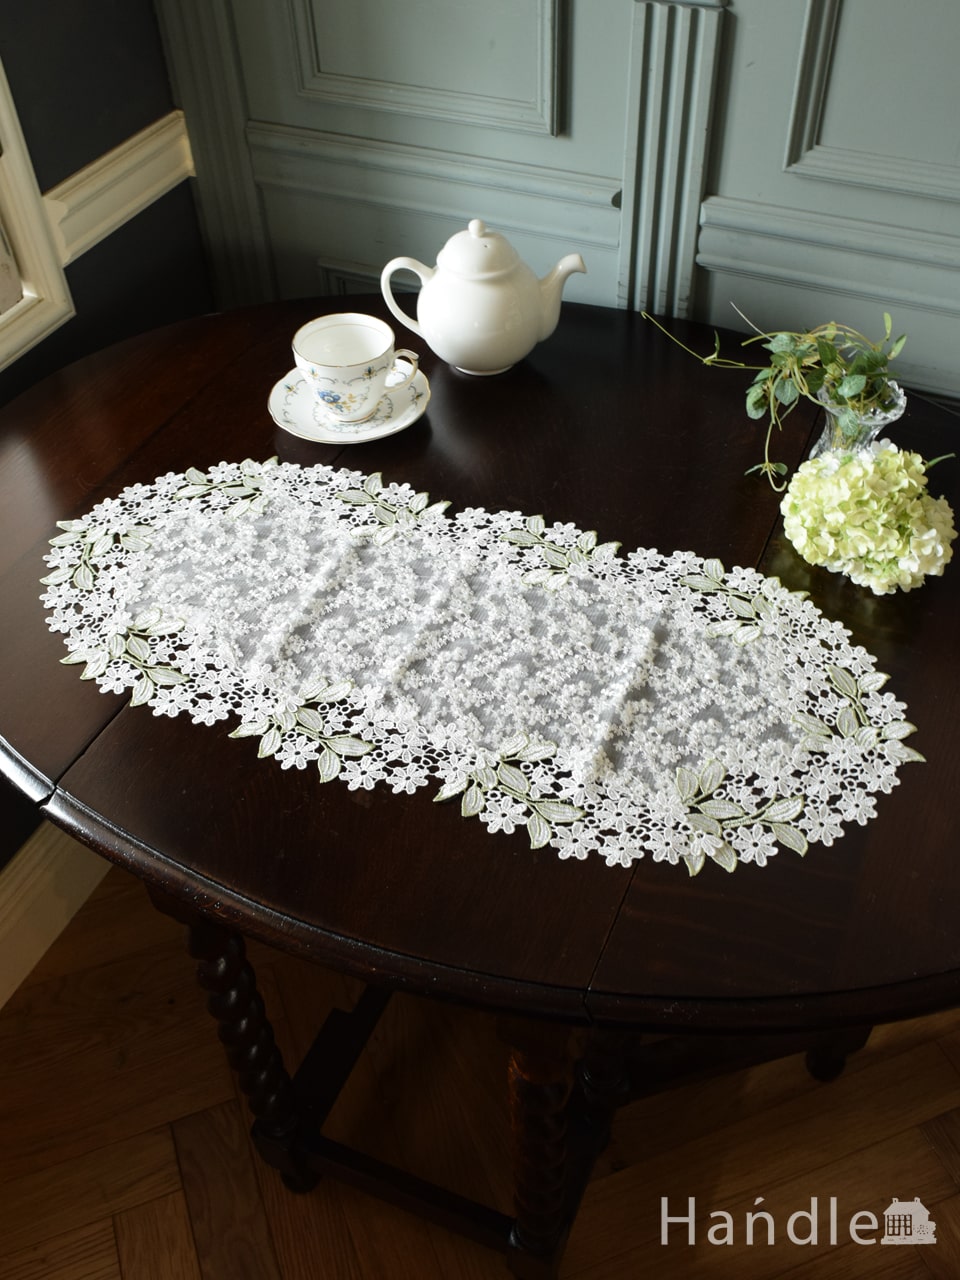 フレンチアンティーク調のテーブルランナー、手刺繍風のお花のレースが華やかなテーブルセンター30x70 (n20-142)